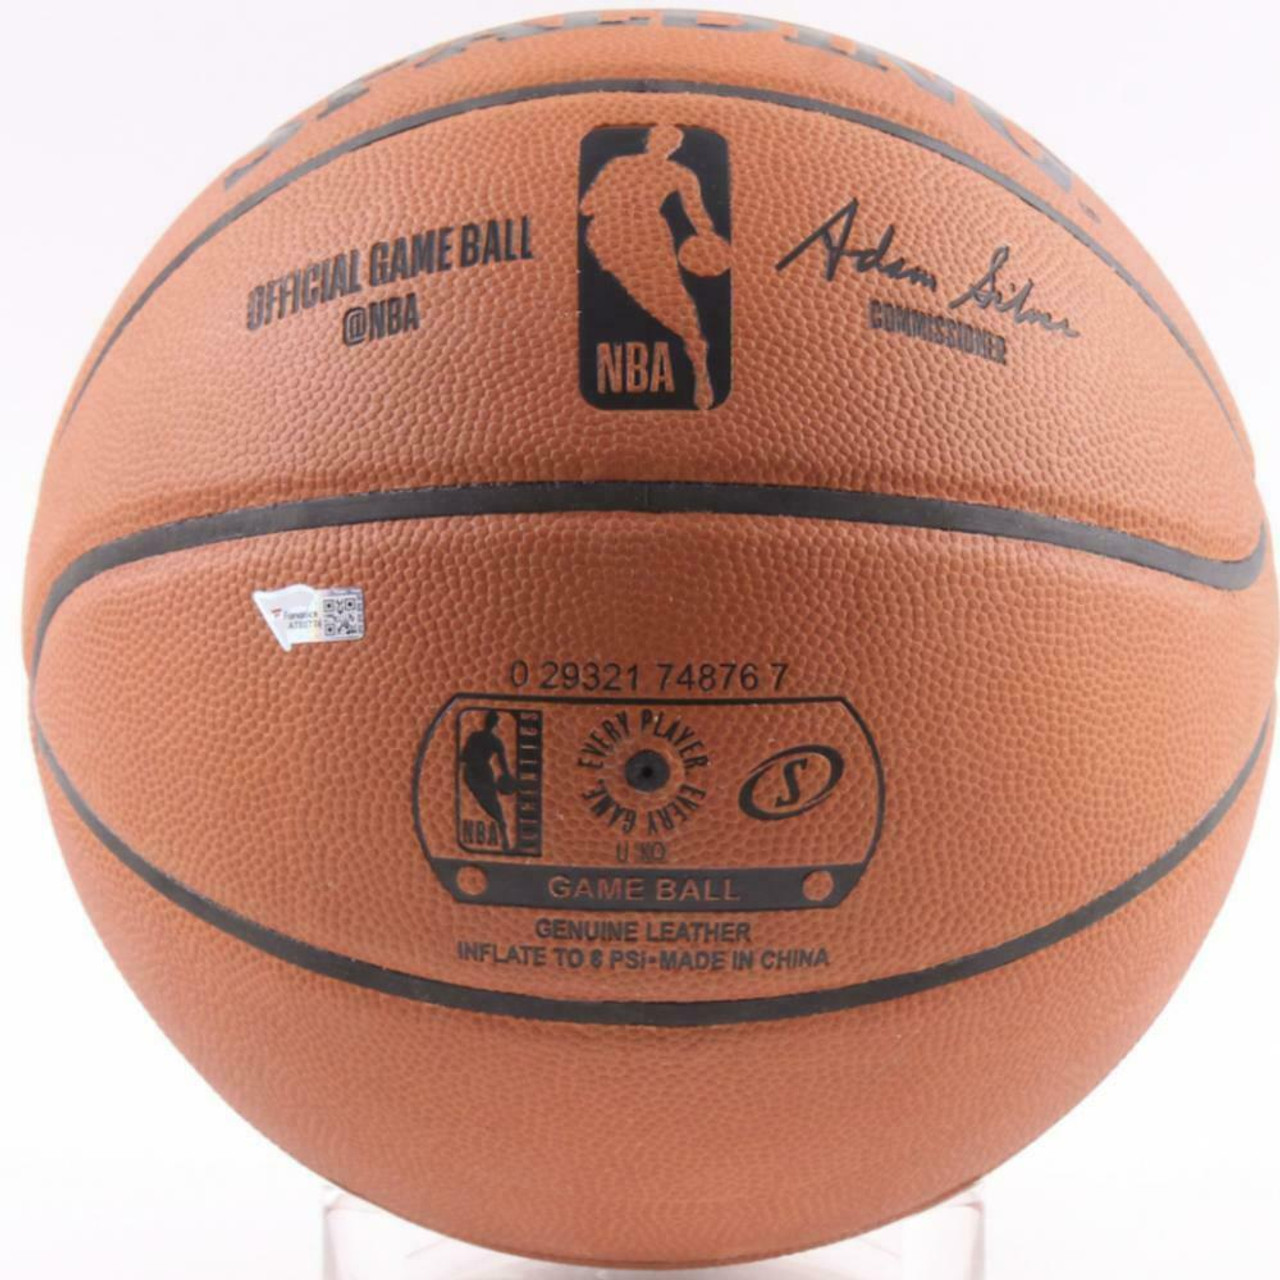 Zion Williamson New Orleans Pelicans Autographed Authentic NBA Jordan –  Golden Autographs